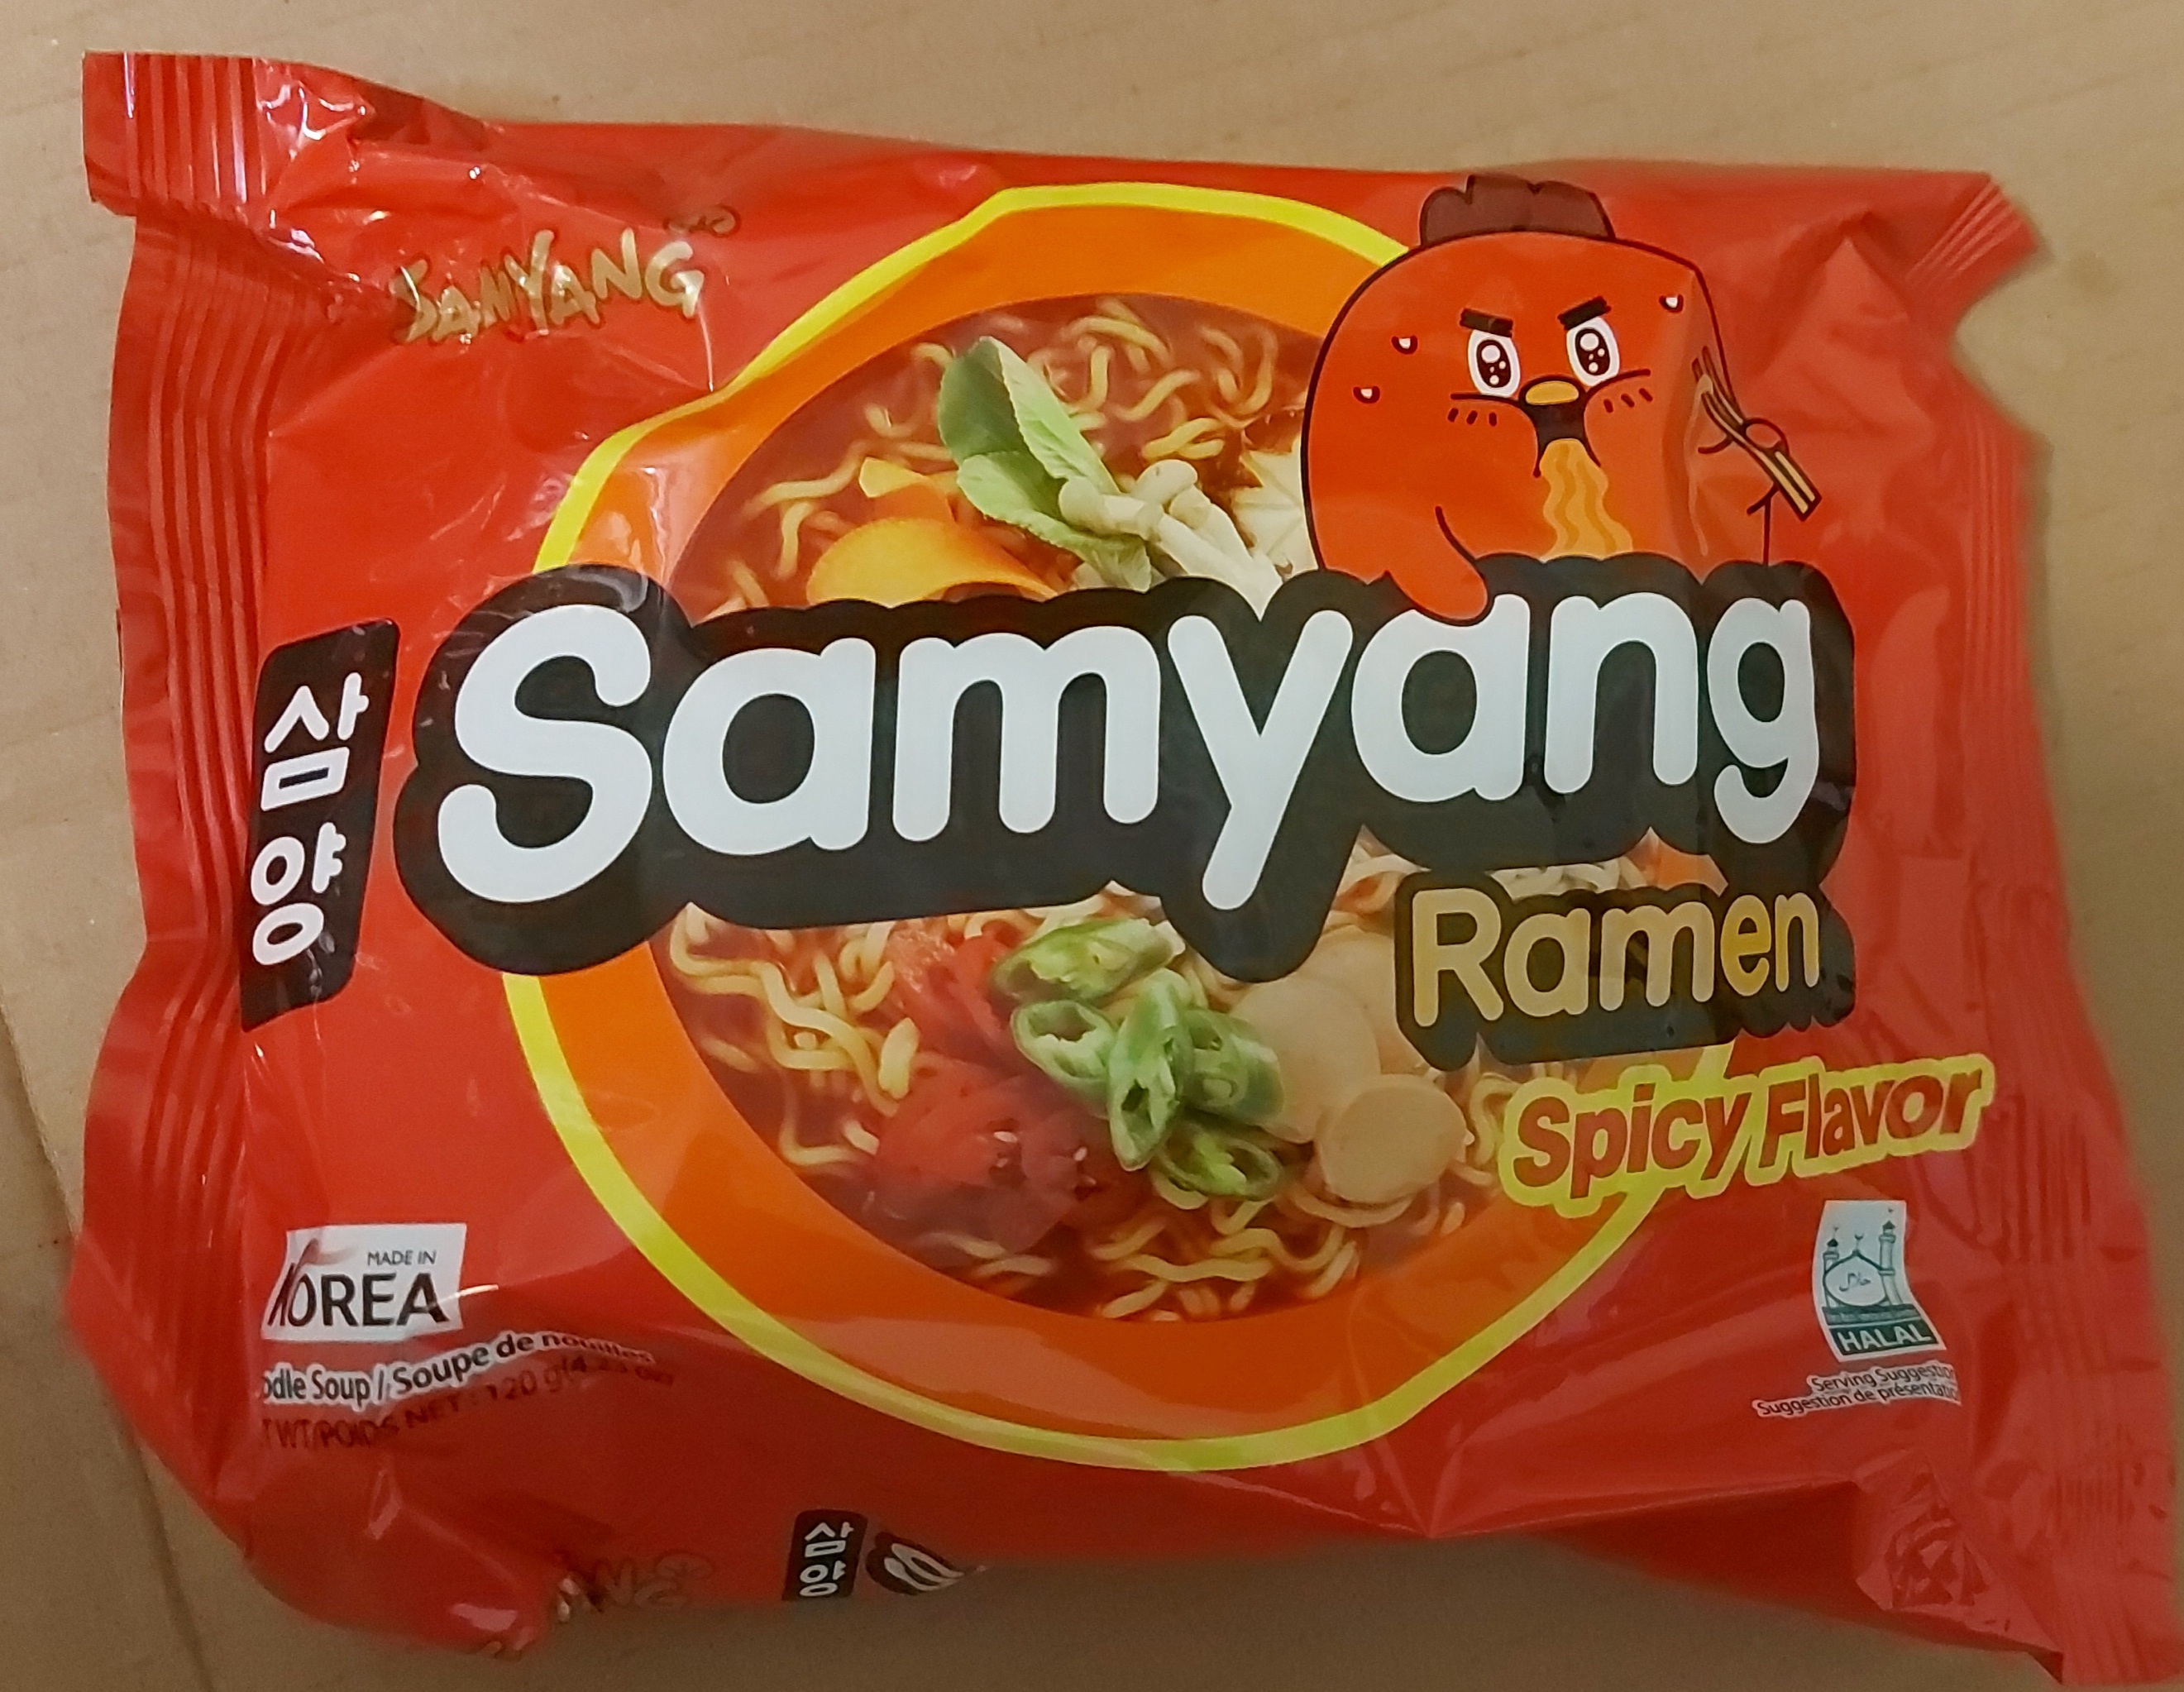  نودل ورمیشه ای کره ای ( رامن ) اسپایسی ۱۲۰ گرم سامیانگ – samyang